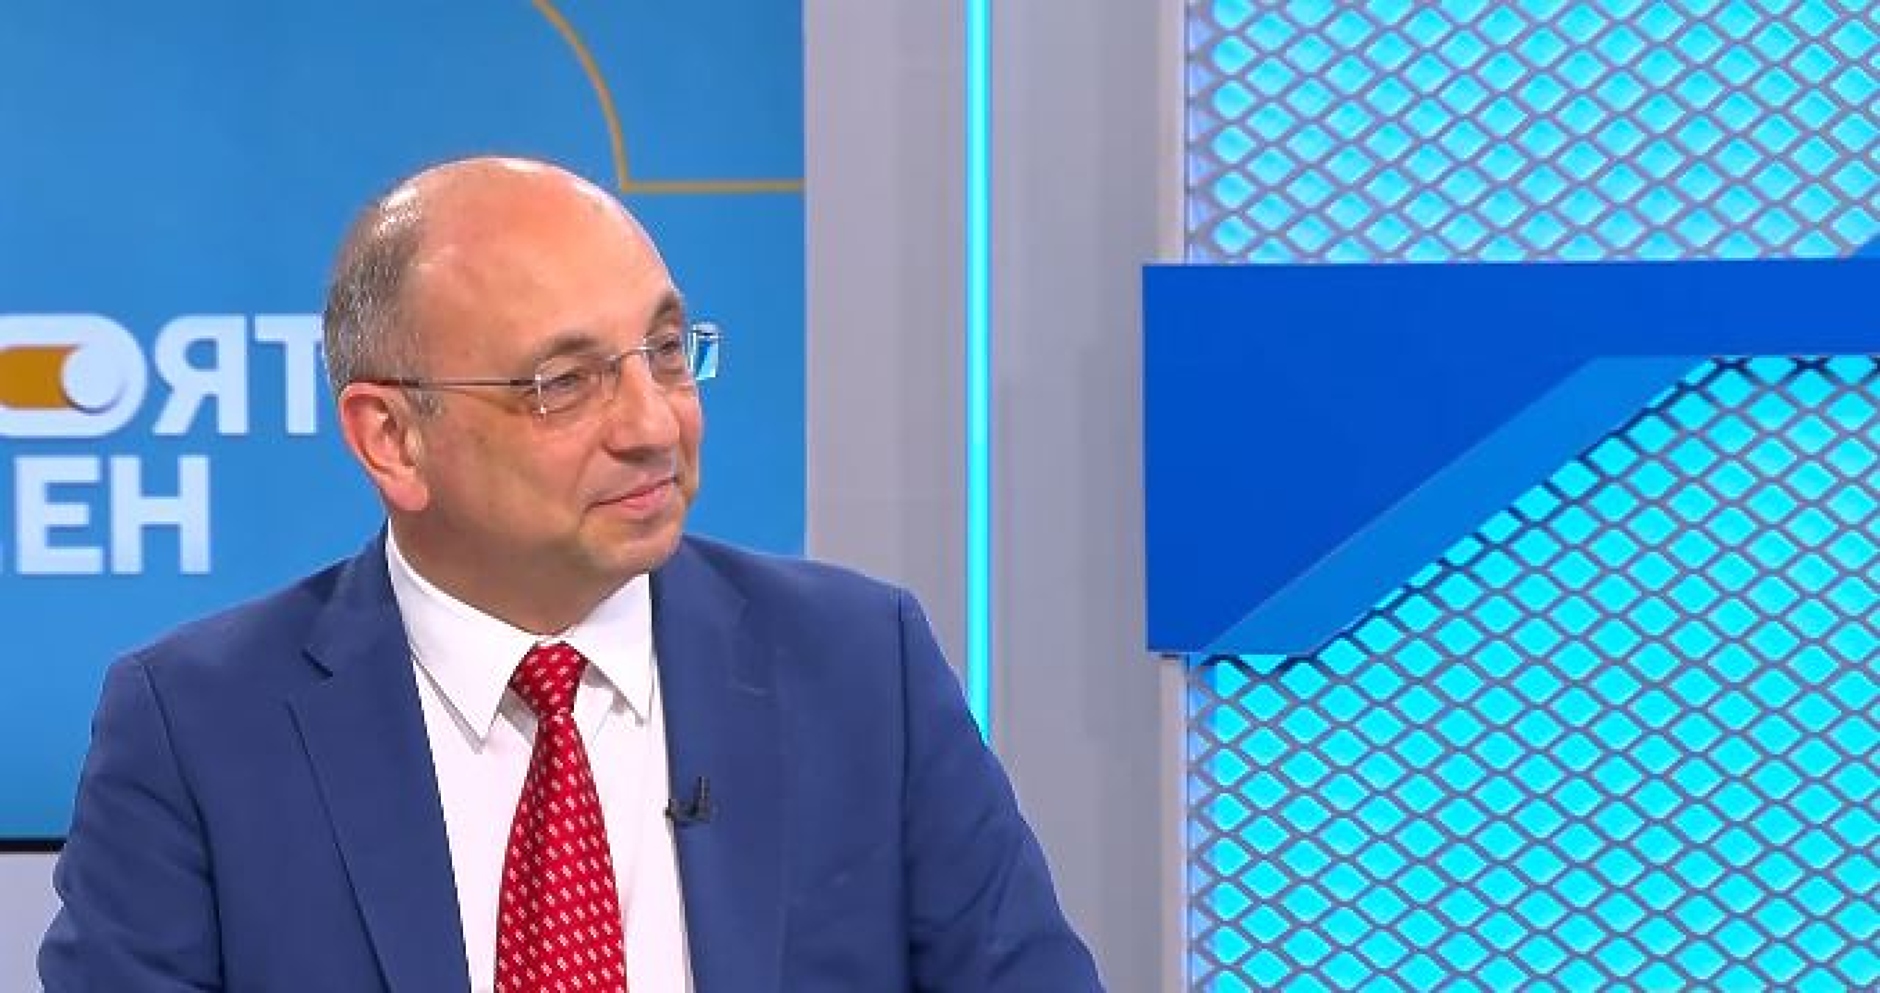 Николай Василев: Политиките на кабинетите в последните 3 години са силно проинфлационни